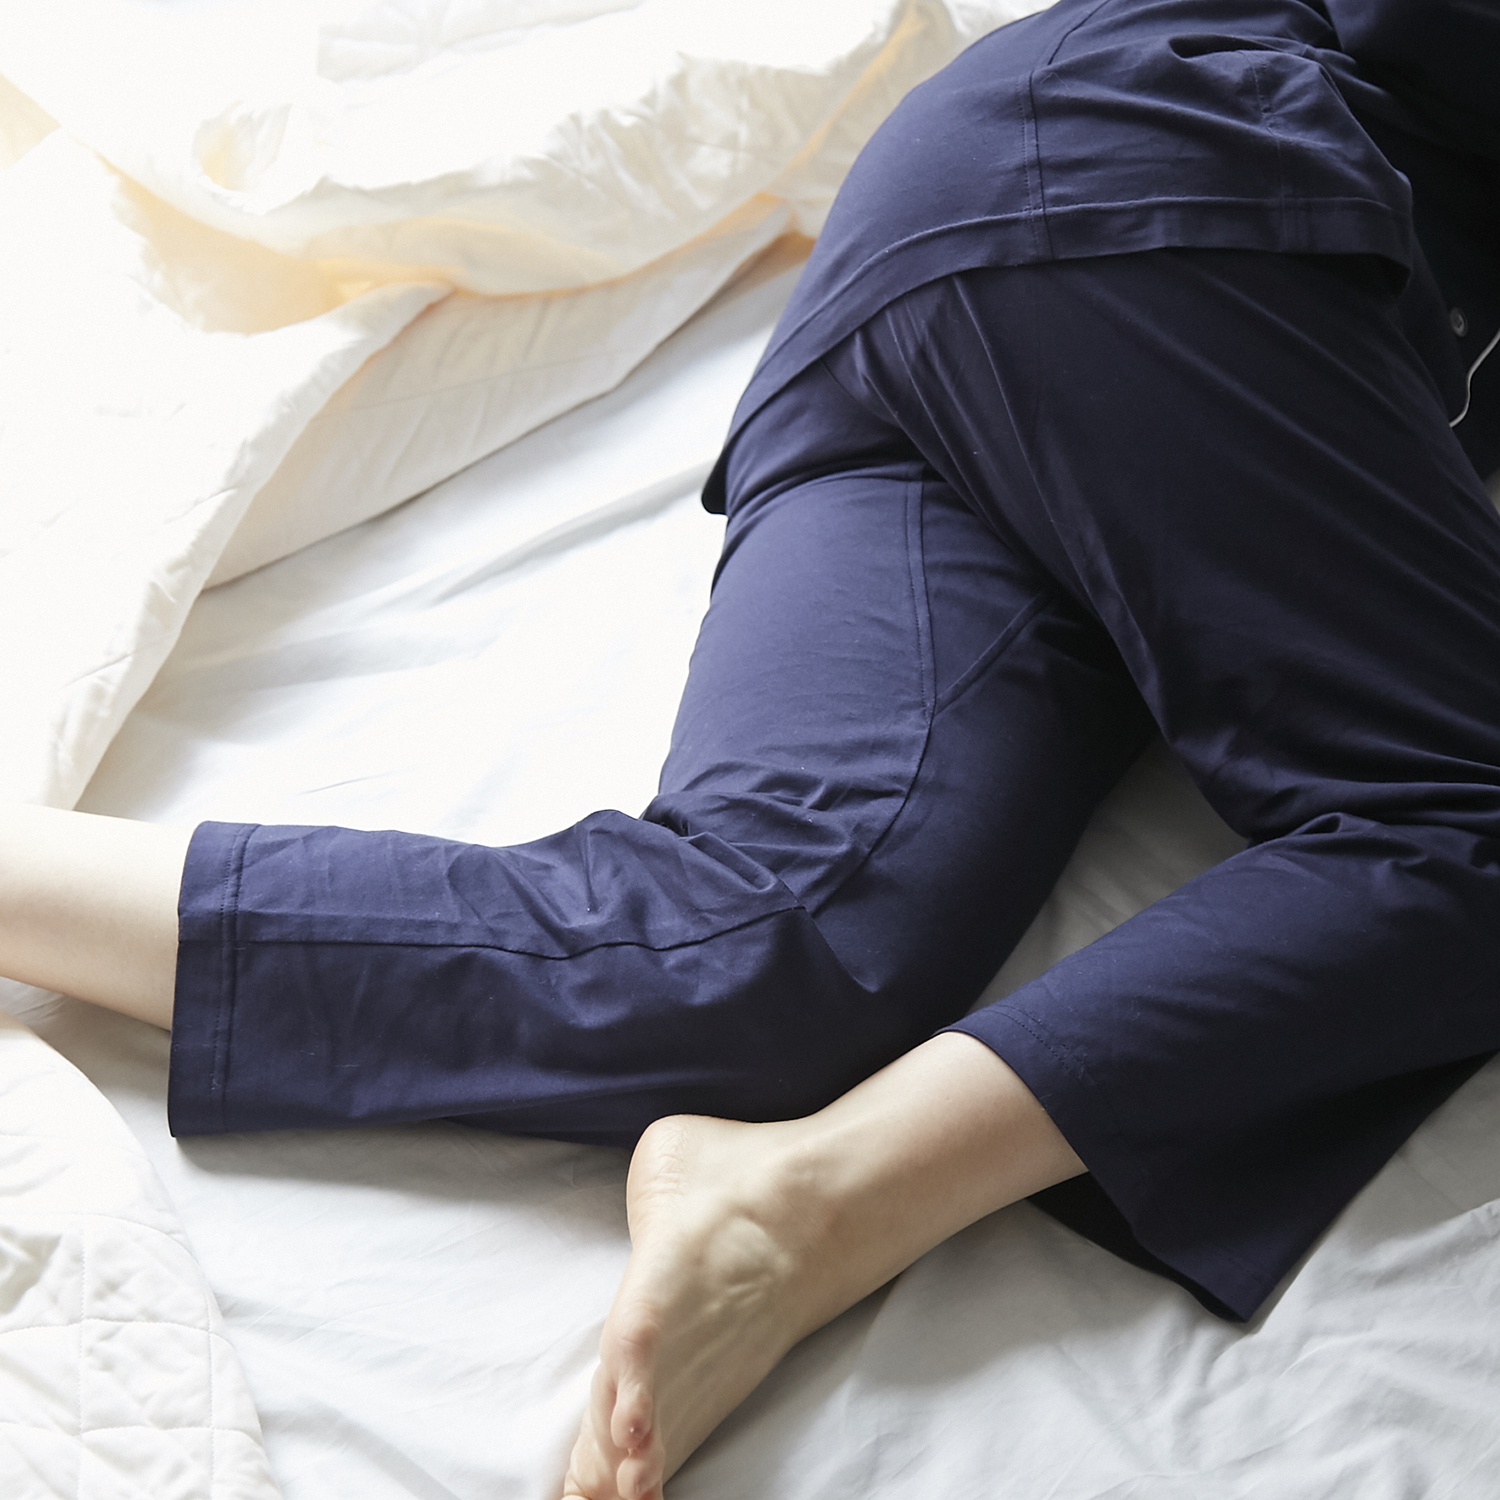 kinel/寝返りしやすいシルク腹巻付きパジャマ